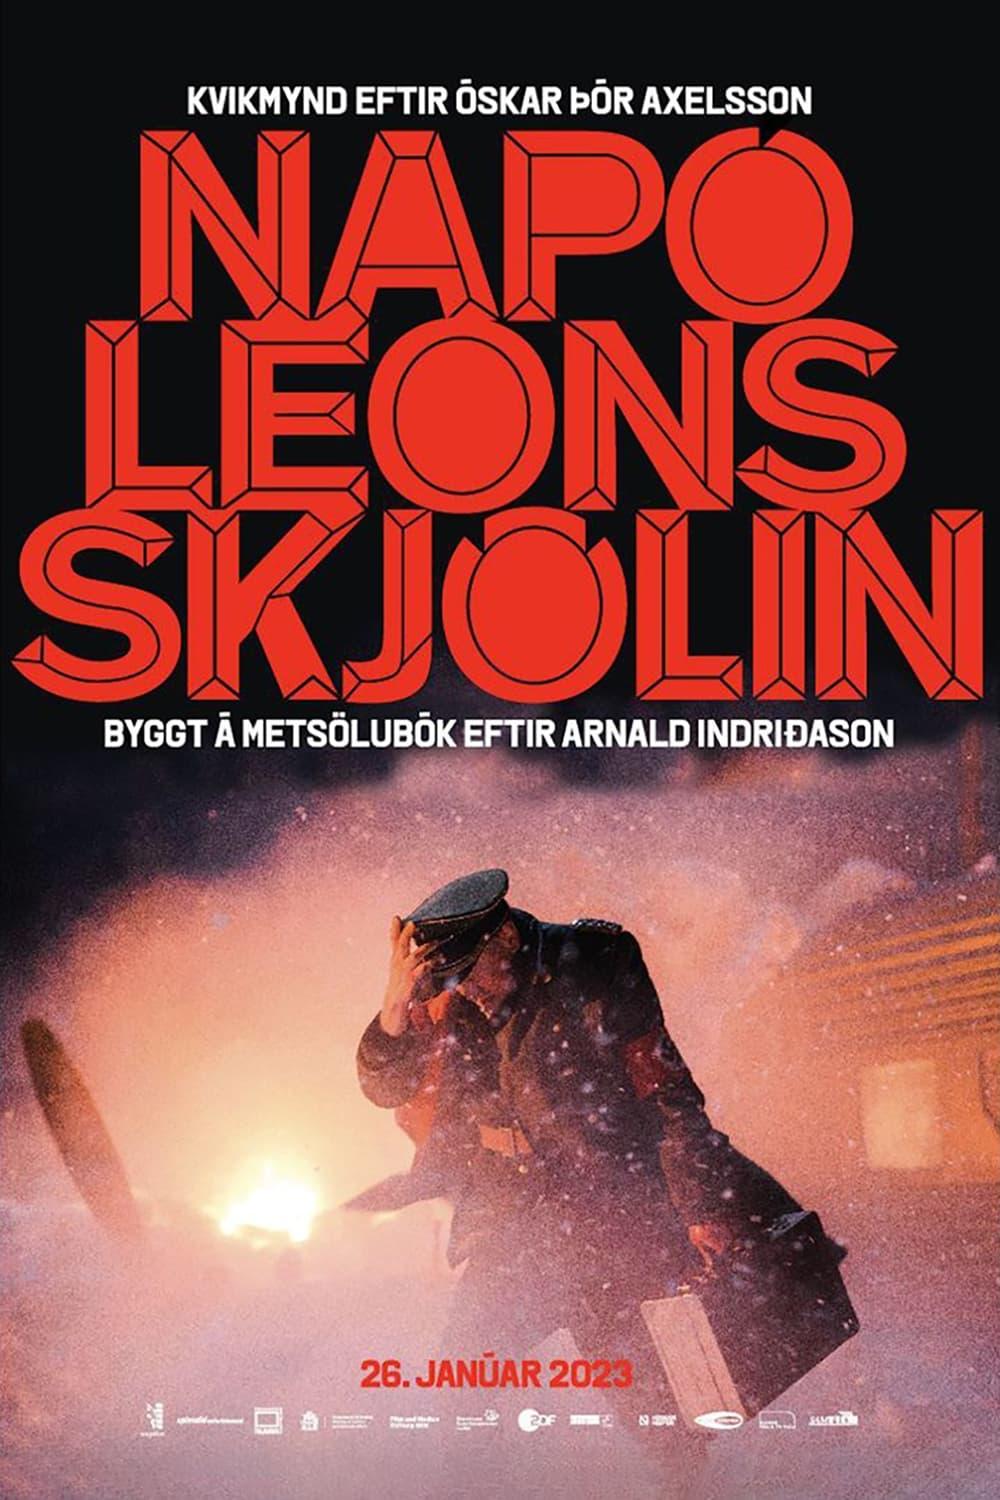 Napóleonsskjölin est-il disponible sur Netflix ou autre ?